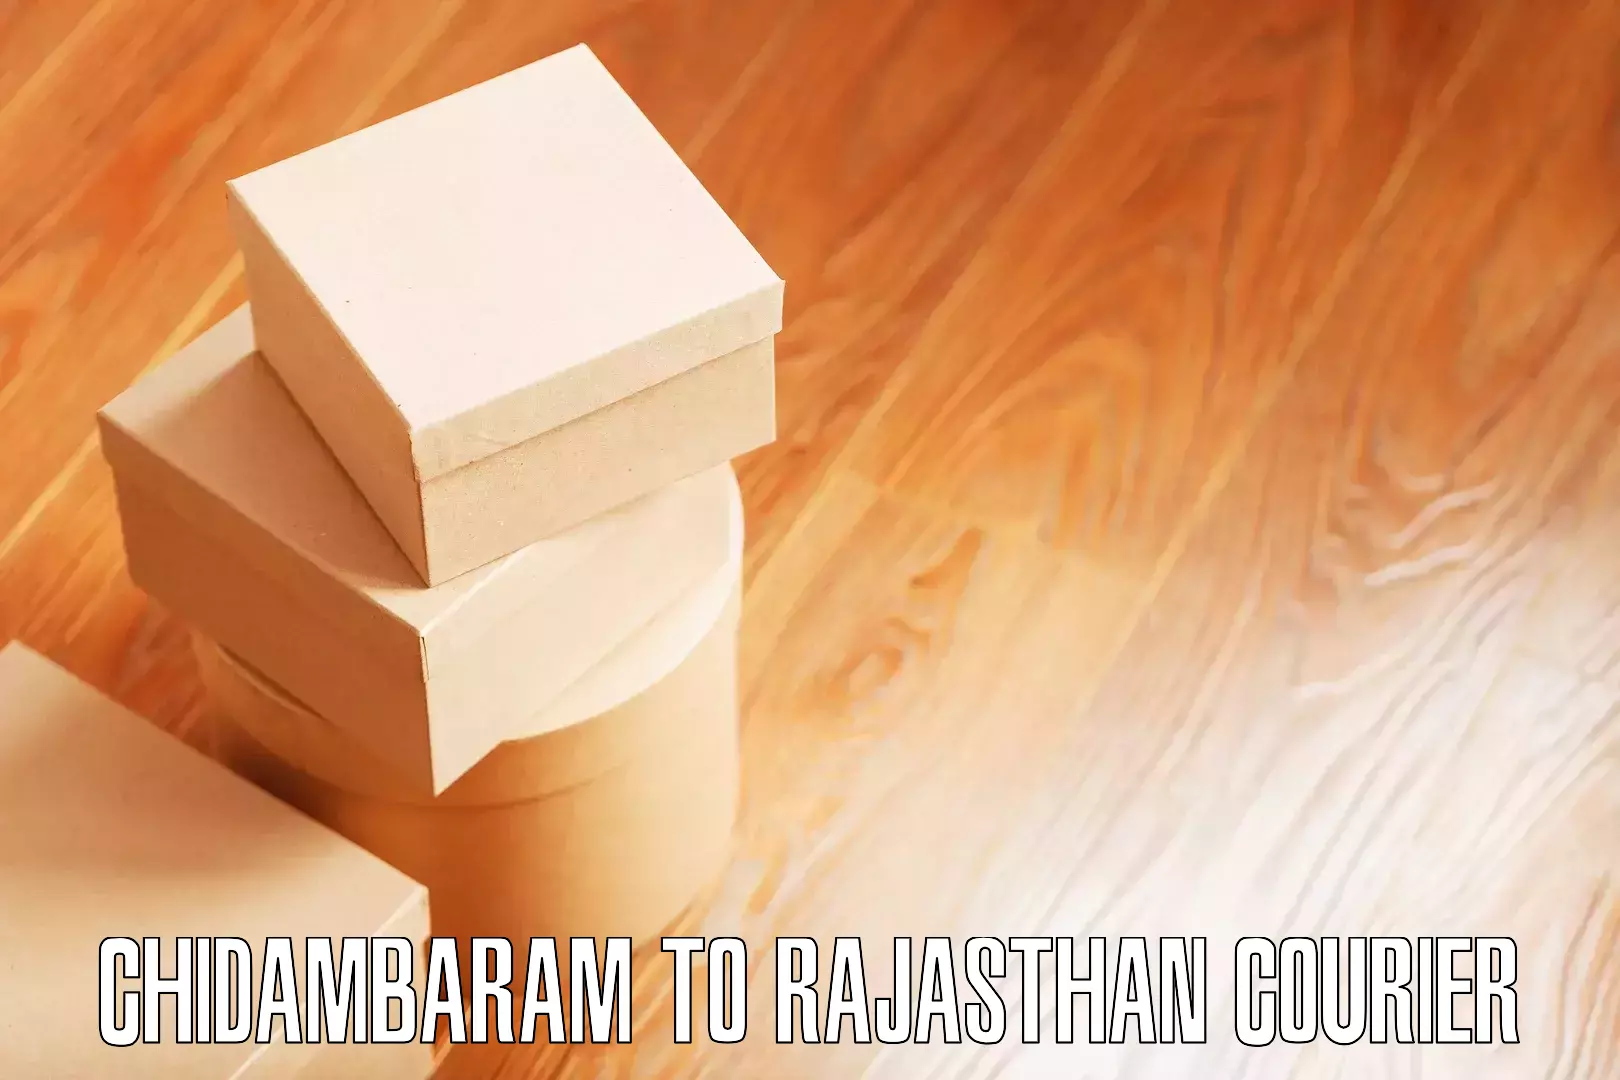 Expert moving and storage Chidambaram to Rajasthan